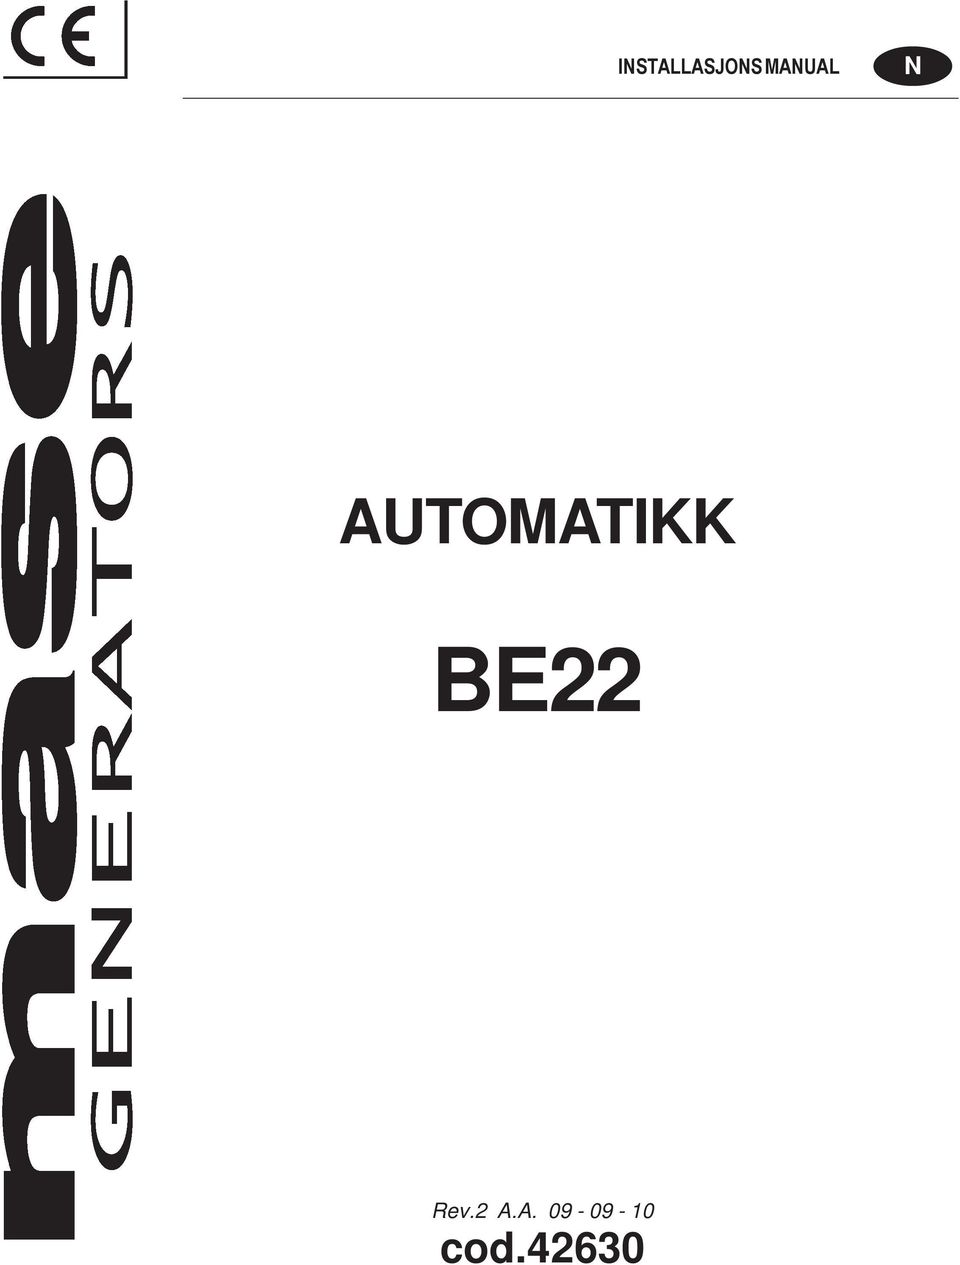 AUTOMATIKK BE22